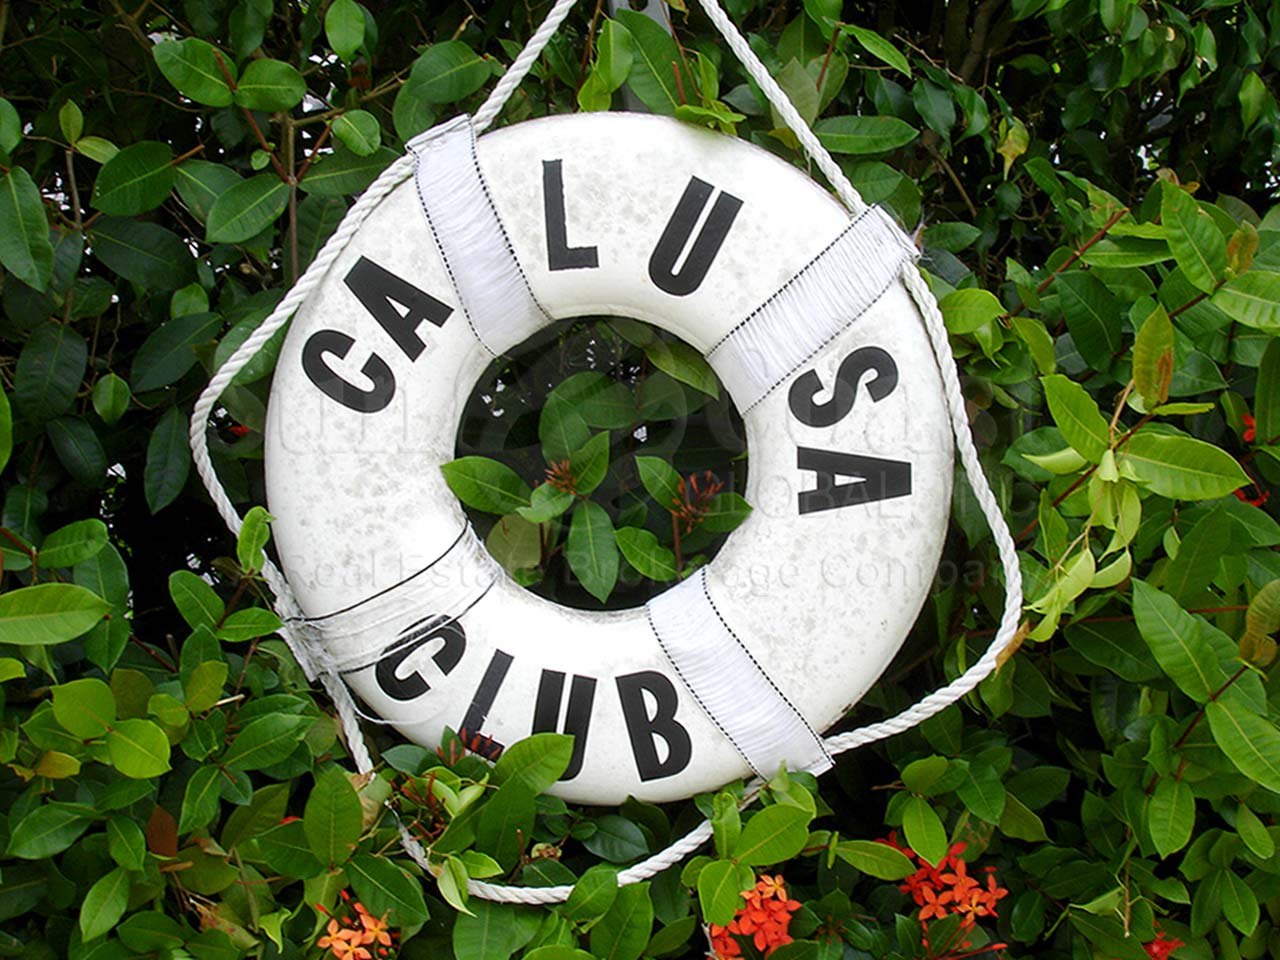 Calusa Club